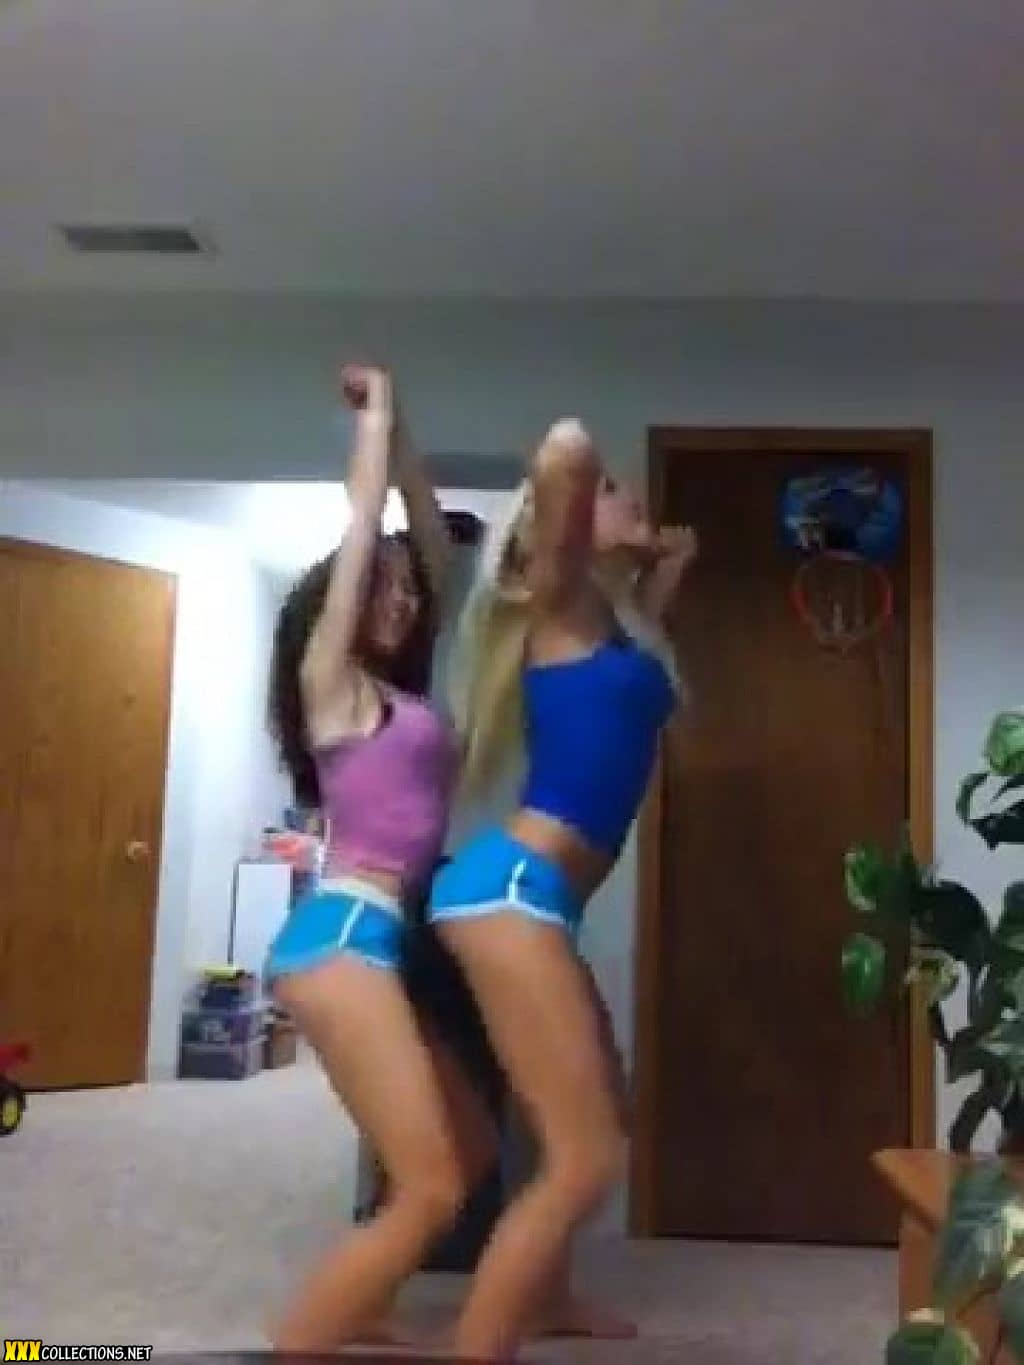 2 Teens Dance On Webcam - 2 Young Teens Dance on Webcam Video Download